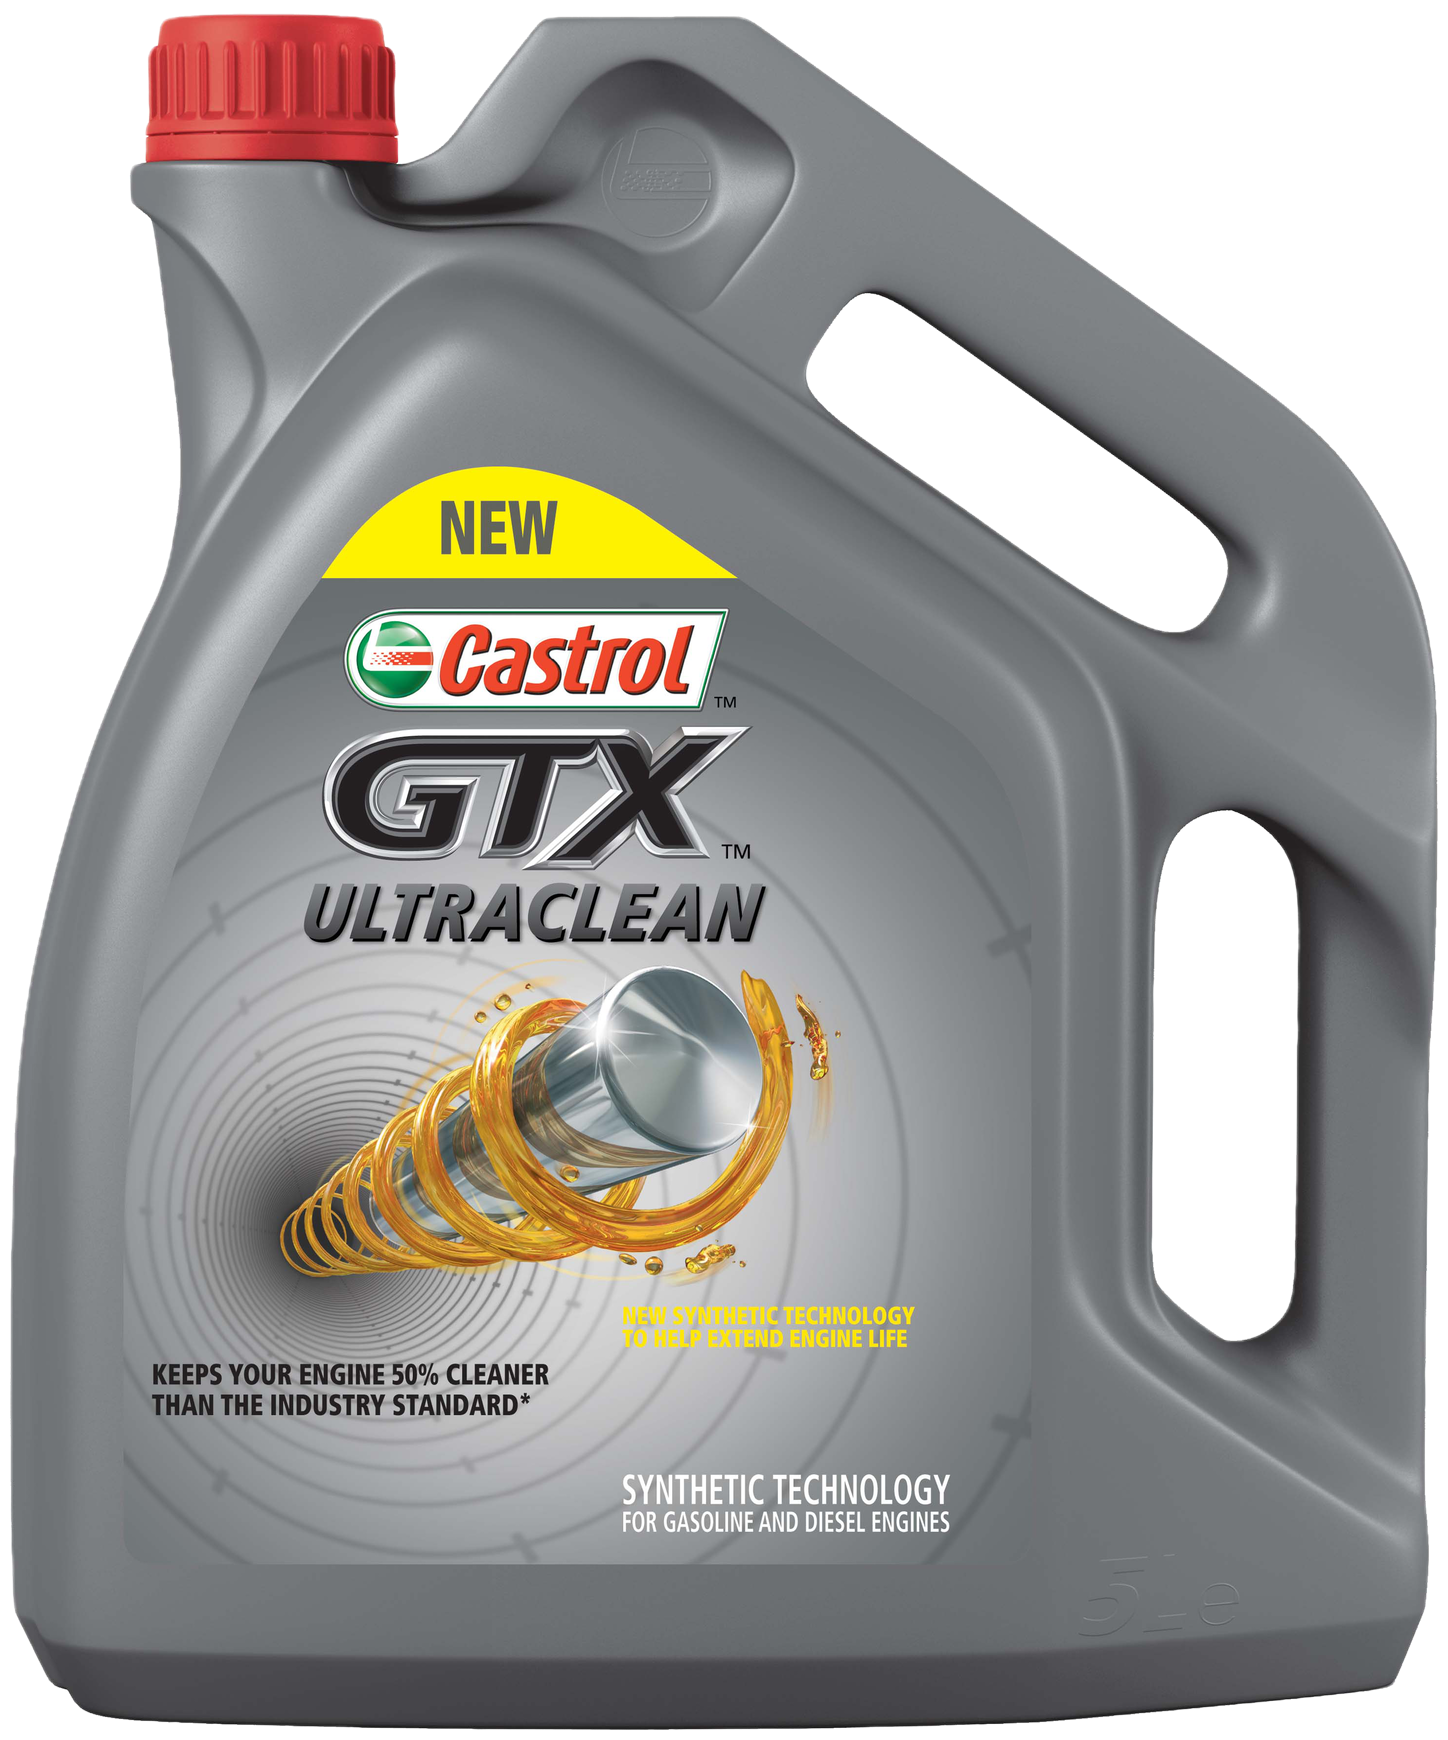 Castrol GTX Ultraclean 10W-40 A3/B4, 5 lt